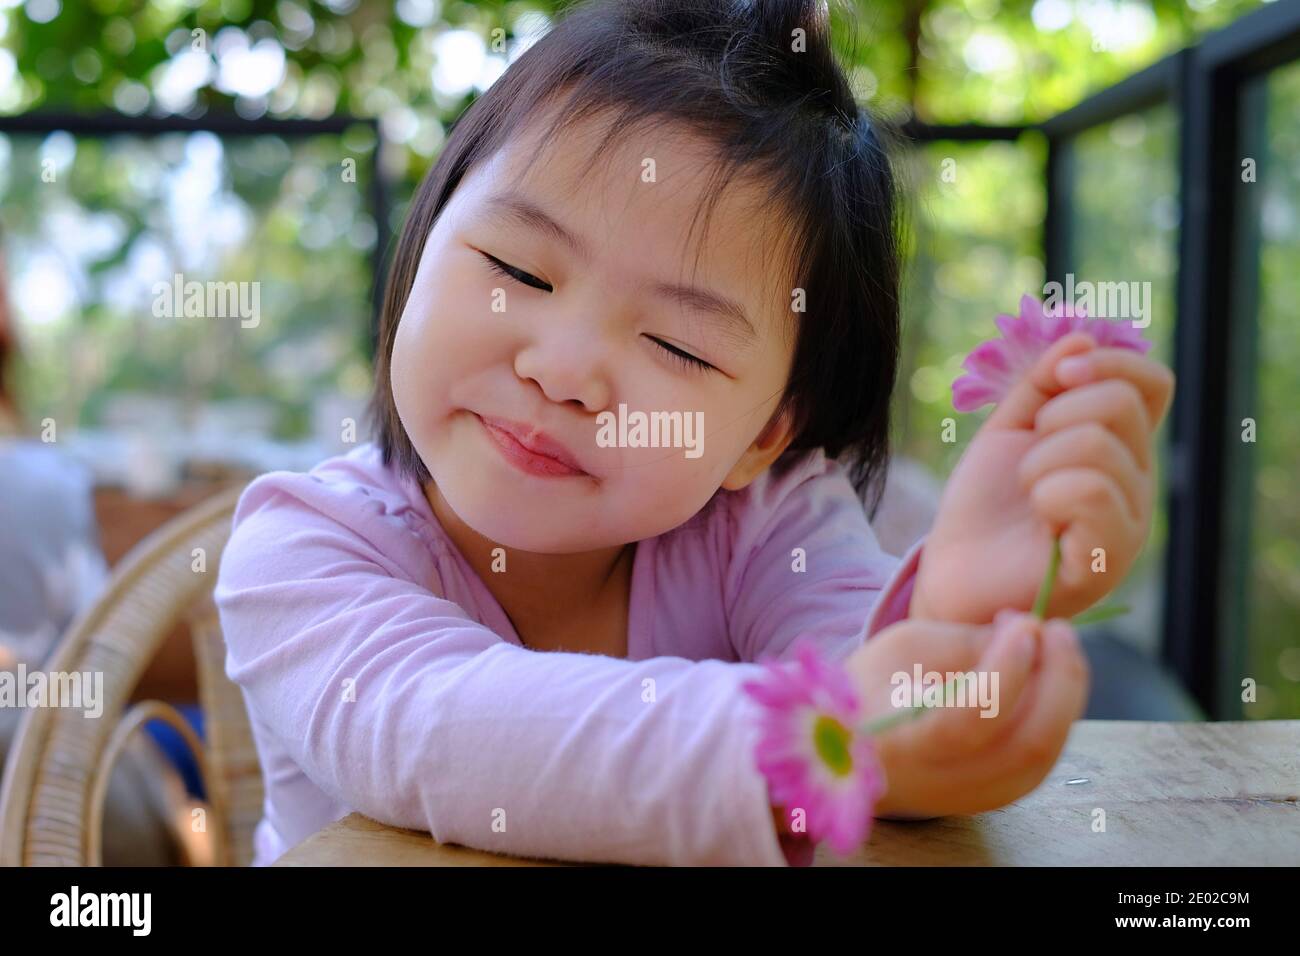 Une jolie petite fille asiatique timide assise près d'une table dans un café, se détendant et apprécier ses jolies fleurs roses, souriant. Banque D'Images